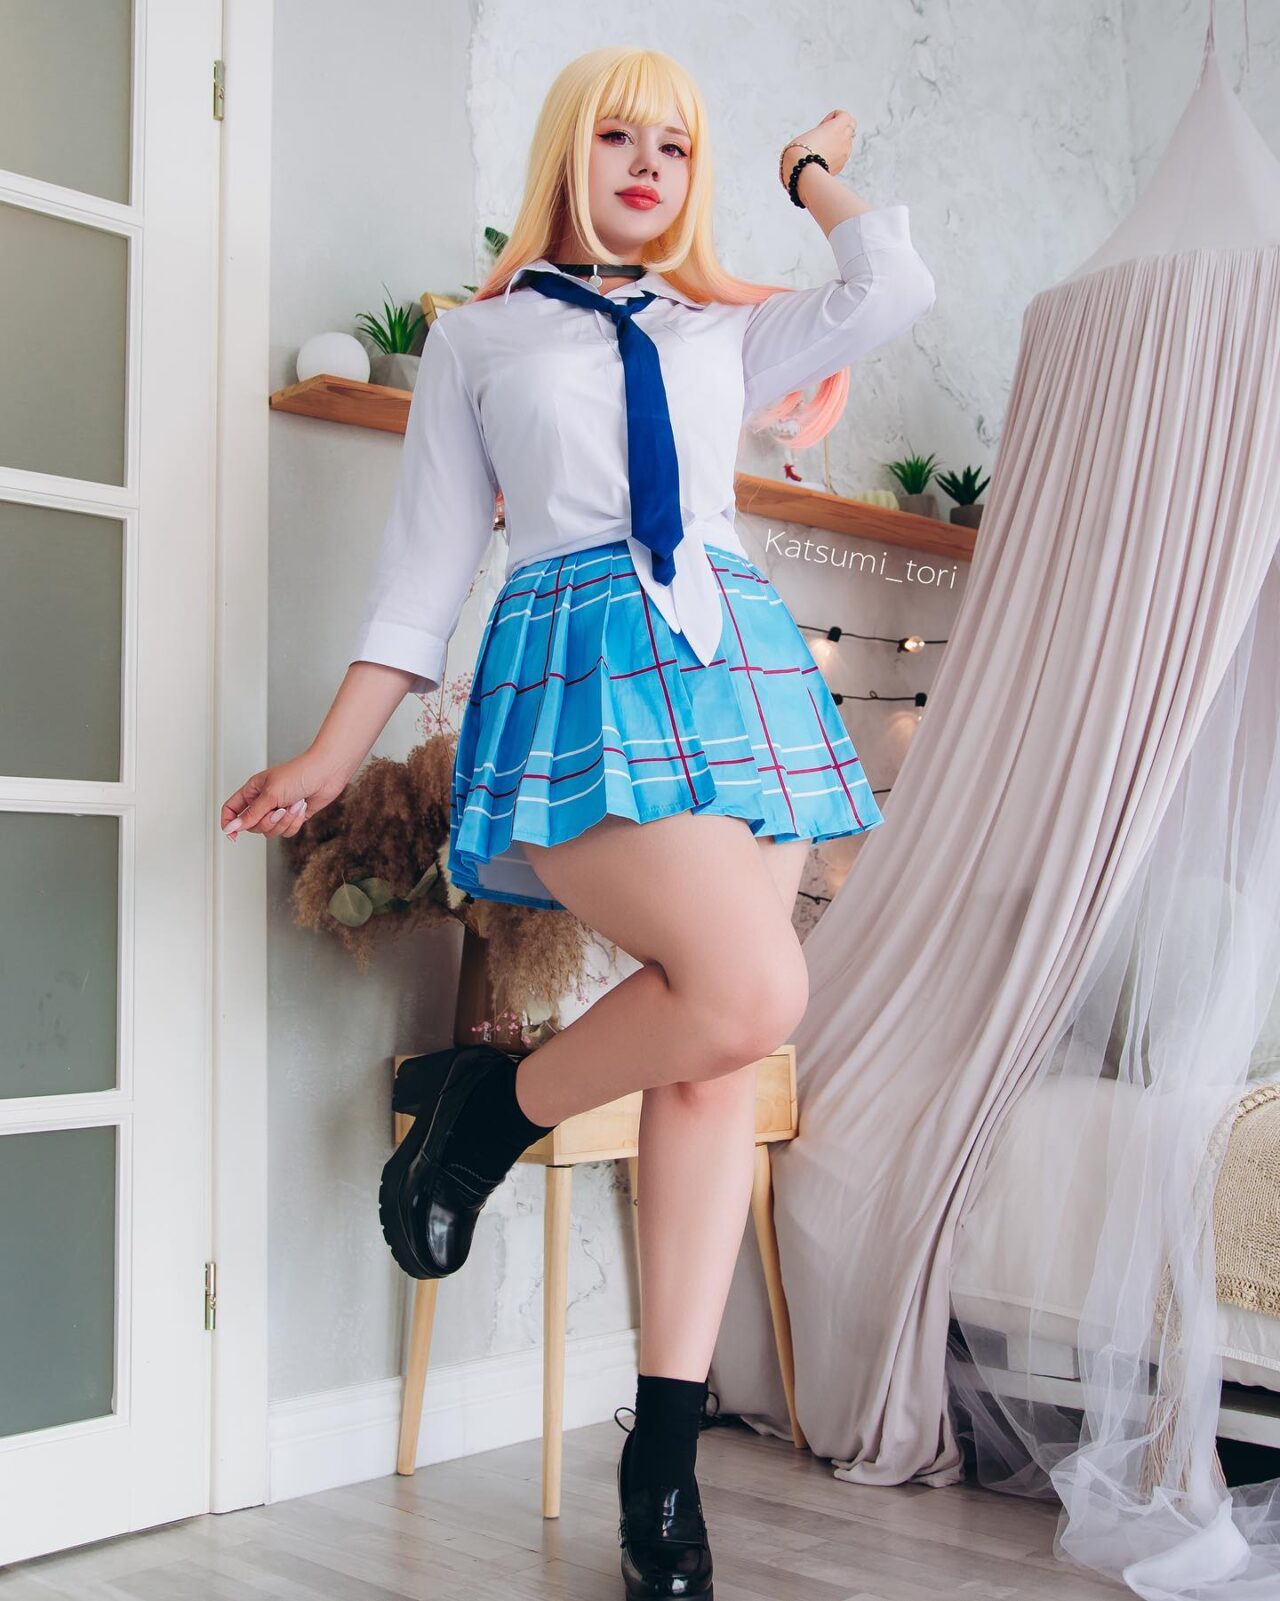 Modelo nyan.katsumi_tori fez um lindo cosplay da Marin de My Dress-Up Darling